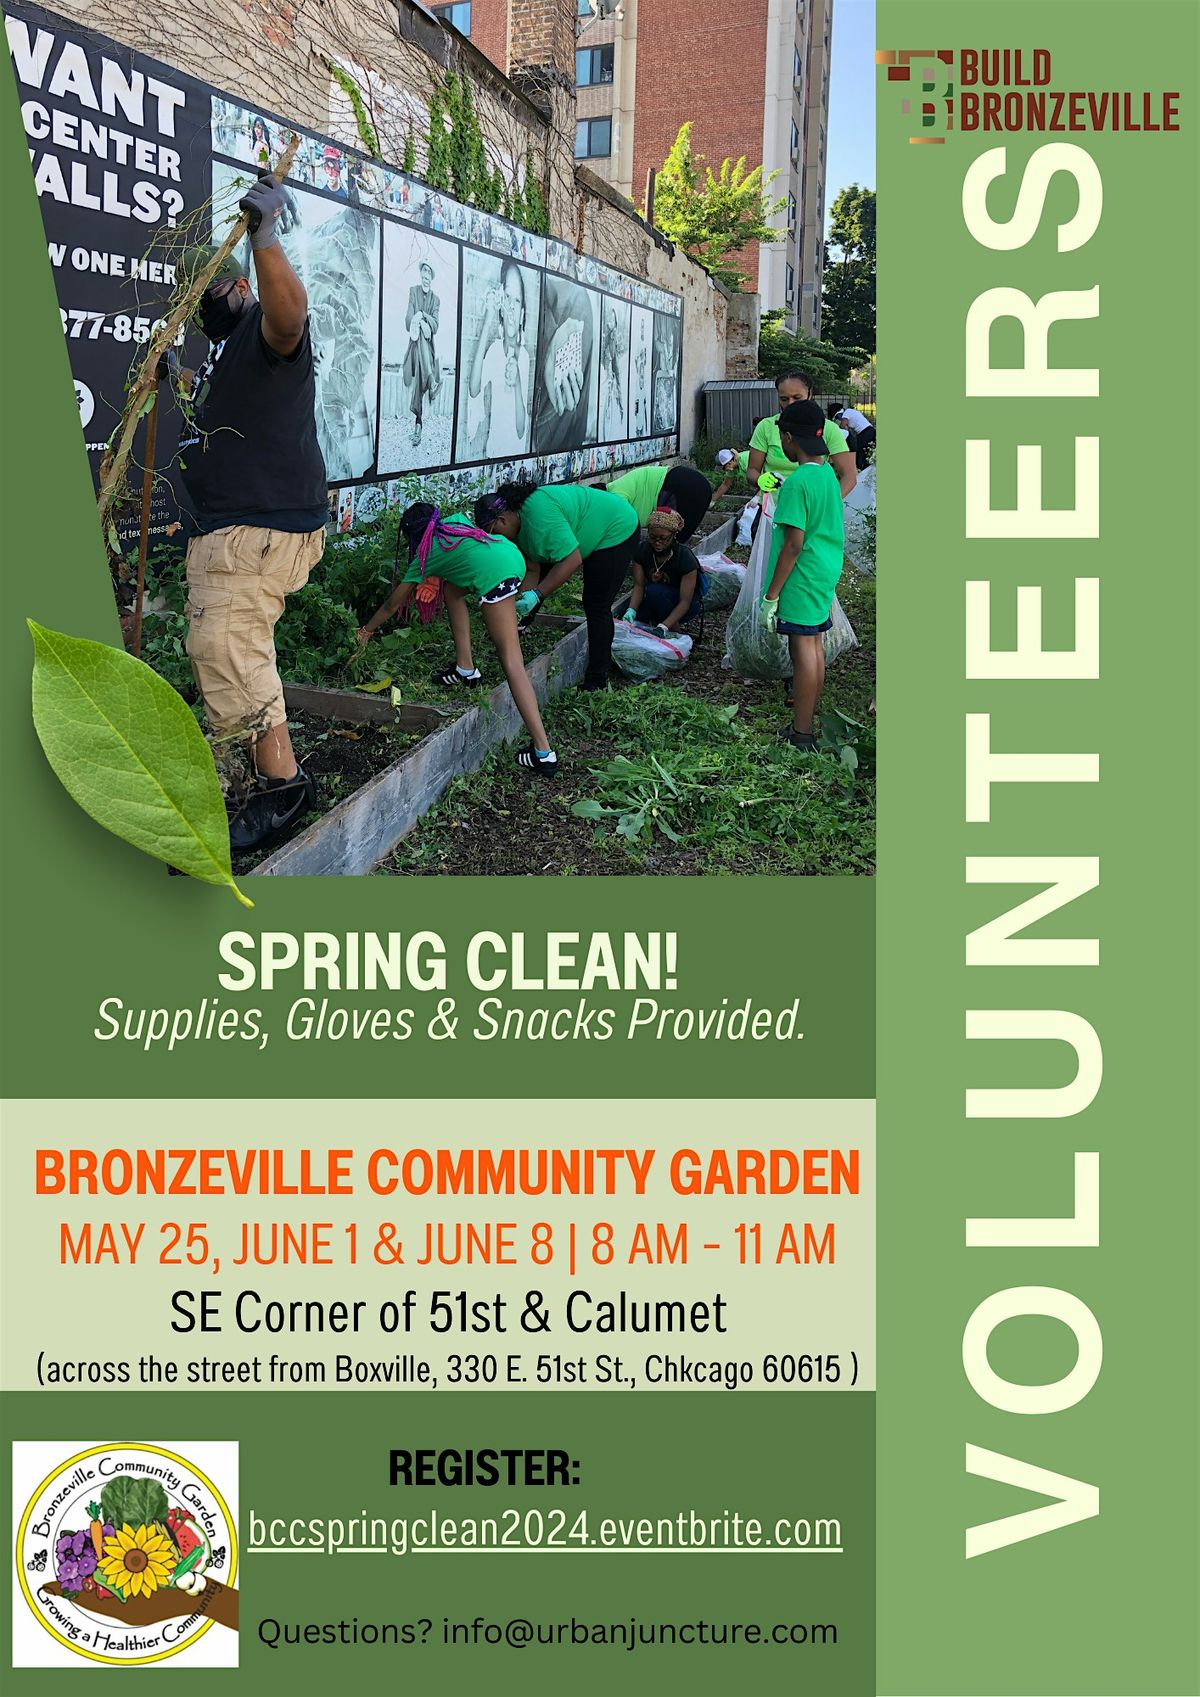 Bronzeville Community Garden Spring Clean Days